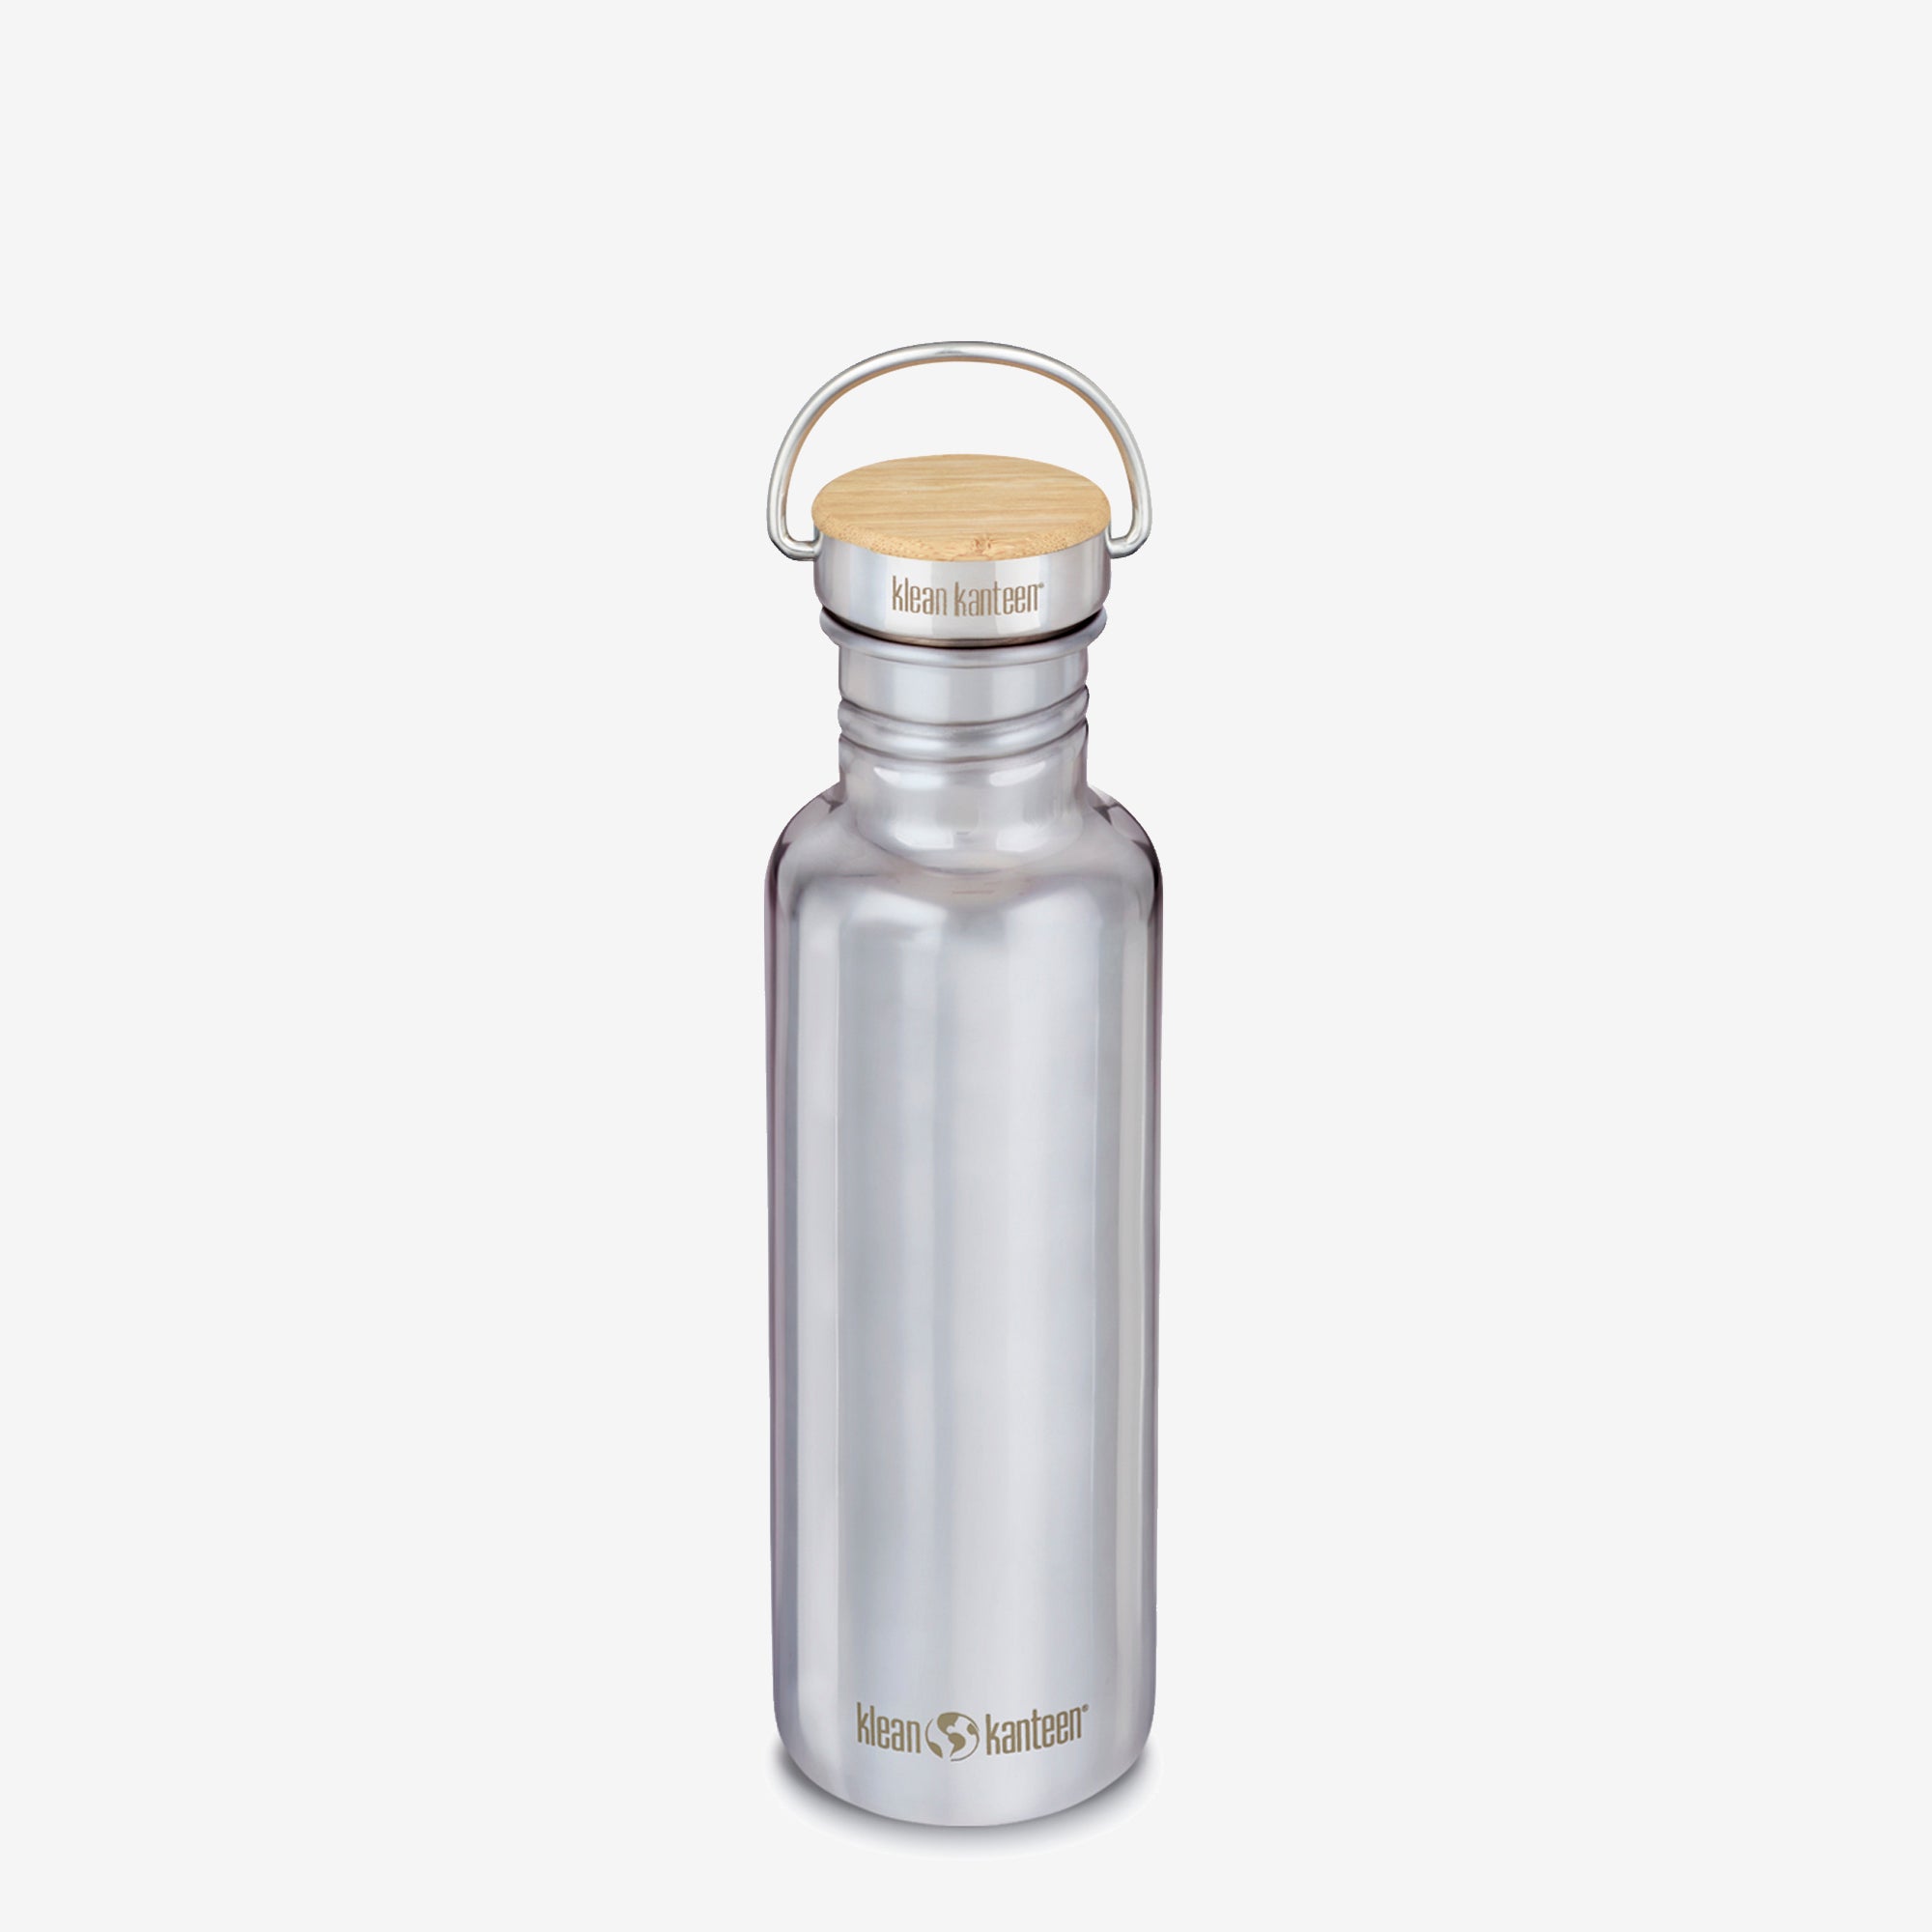 Best Stainless Steel Water Bottle